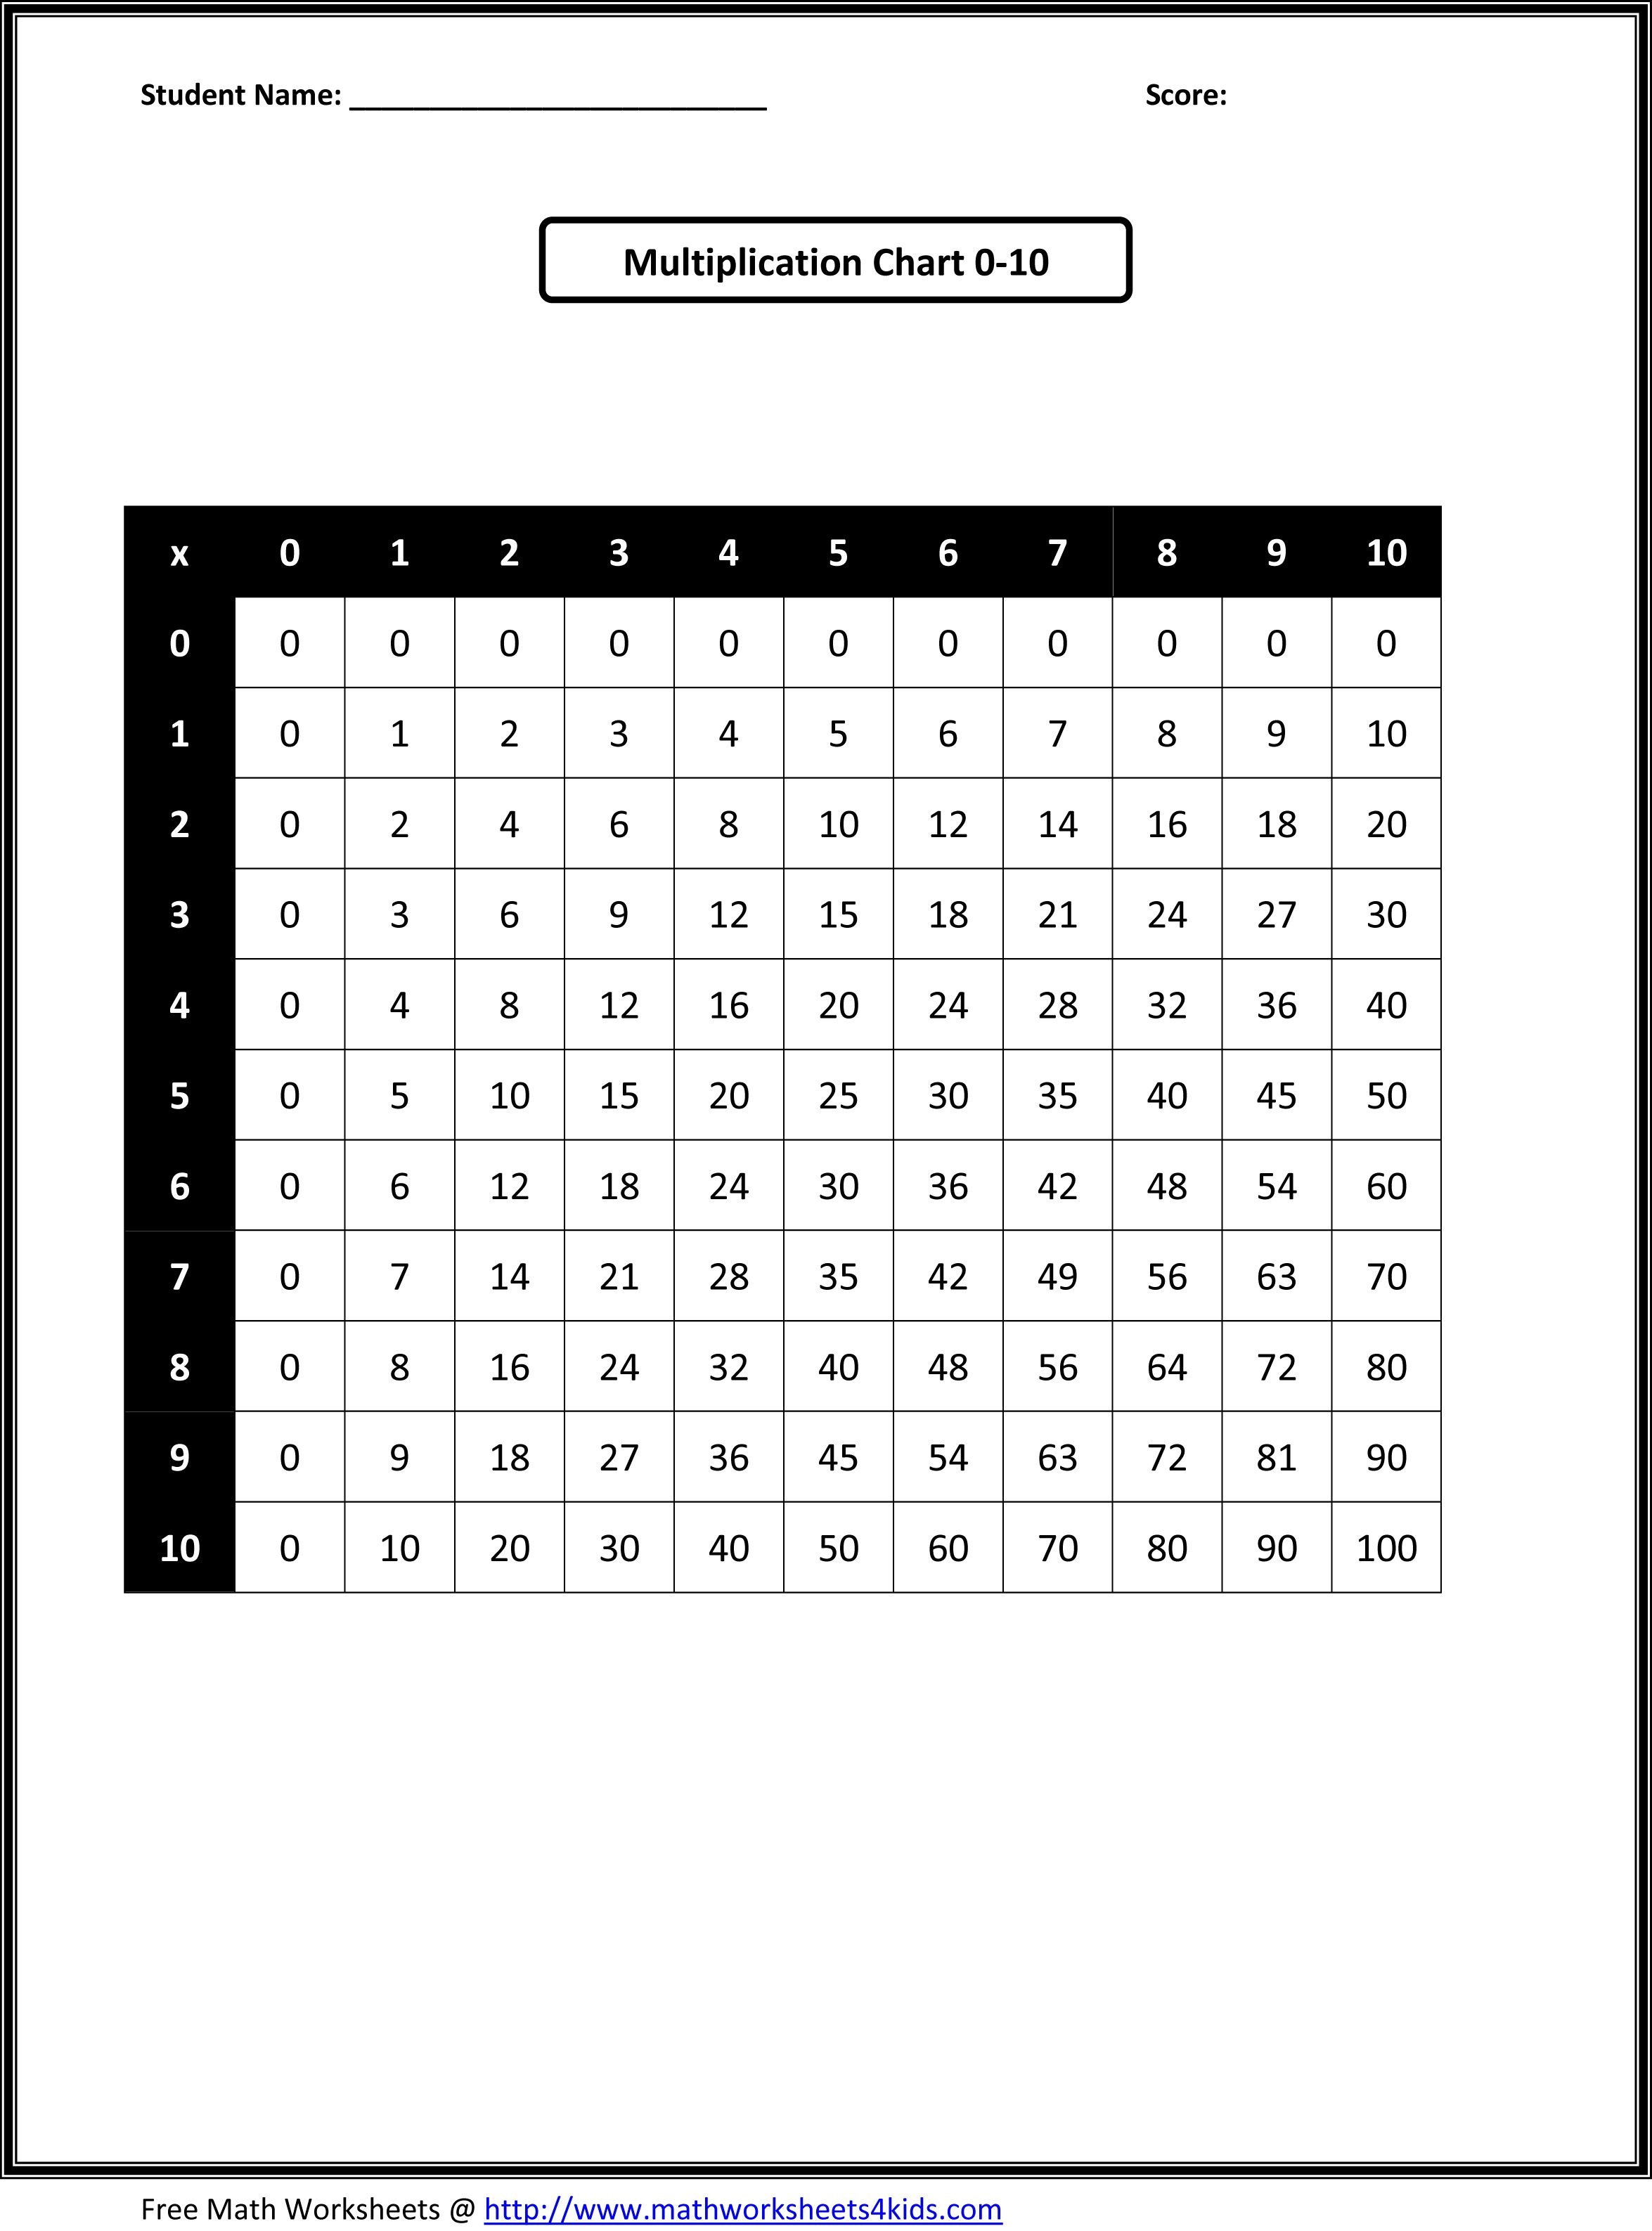 Free Printable Math Worksheets | Third Grade Math Worksheets - Free Printable Math Worksheets For 3Rd Grade